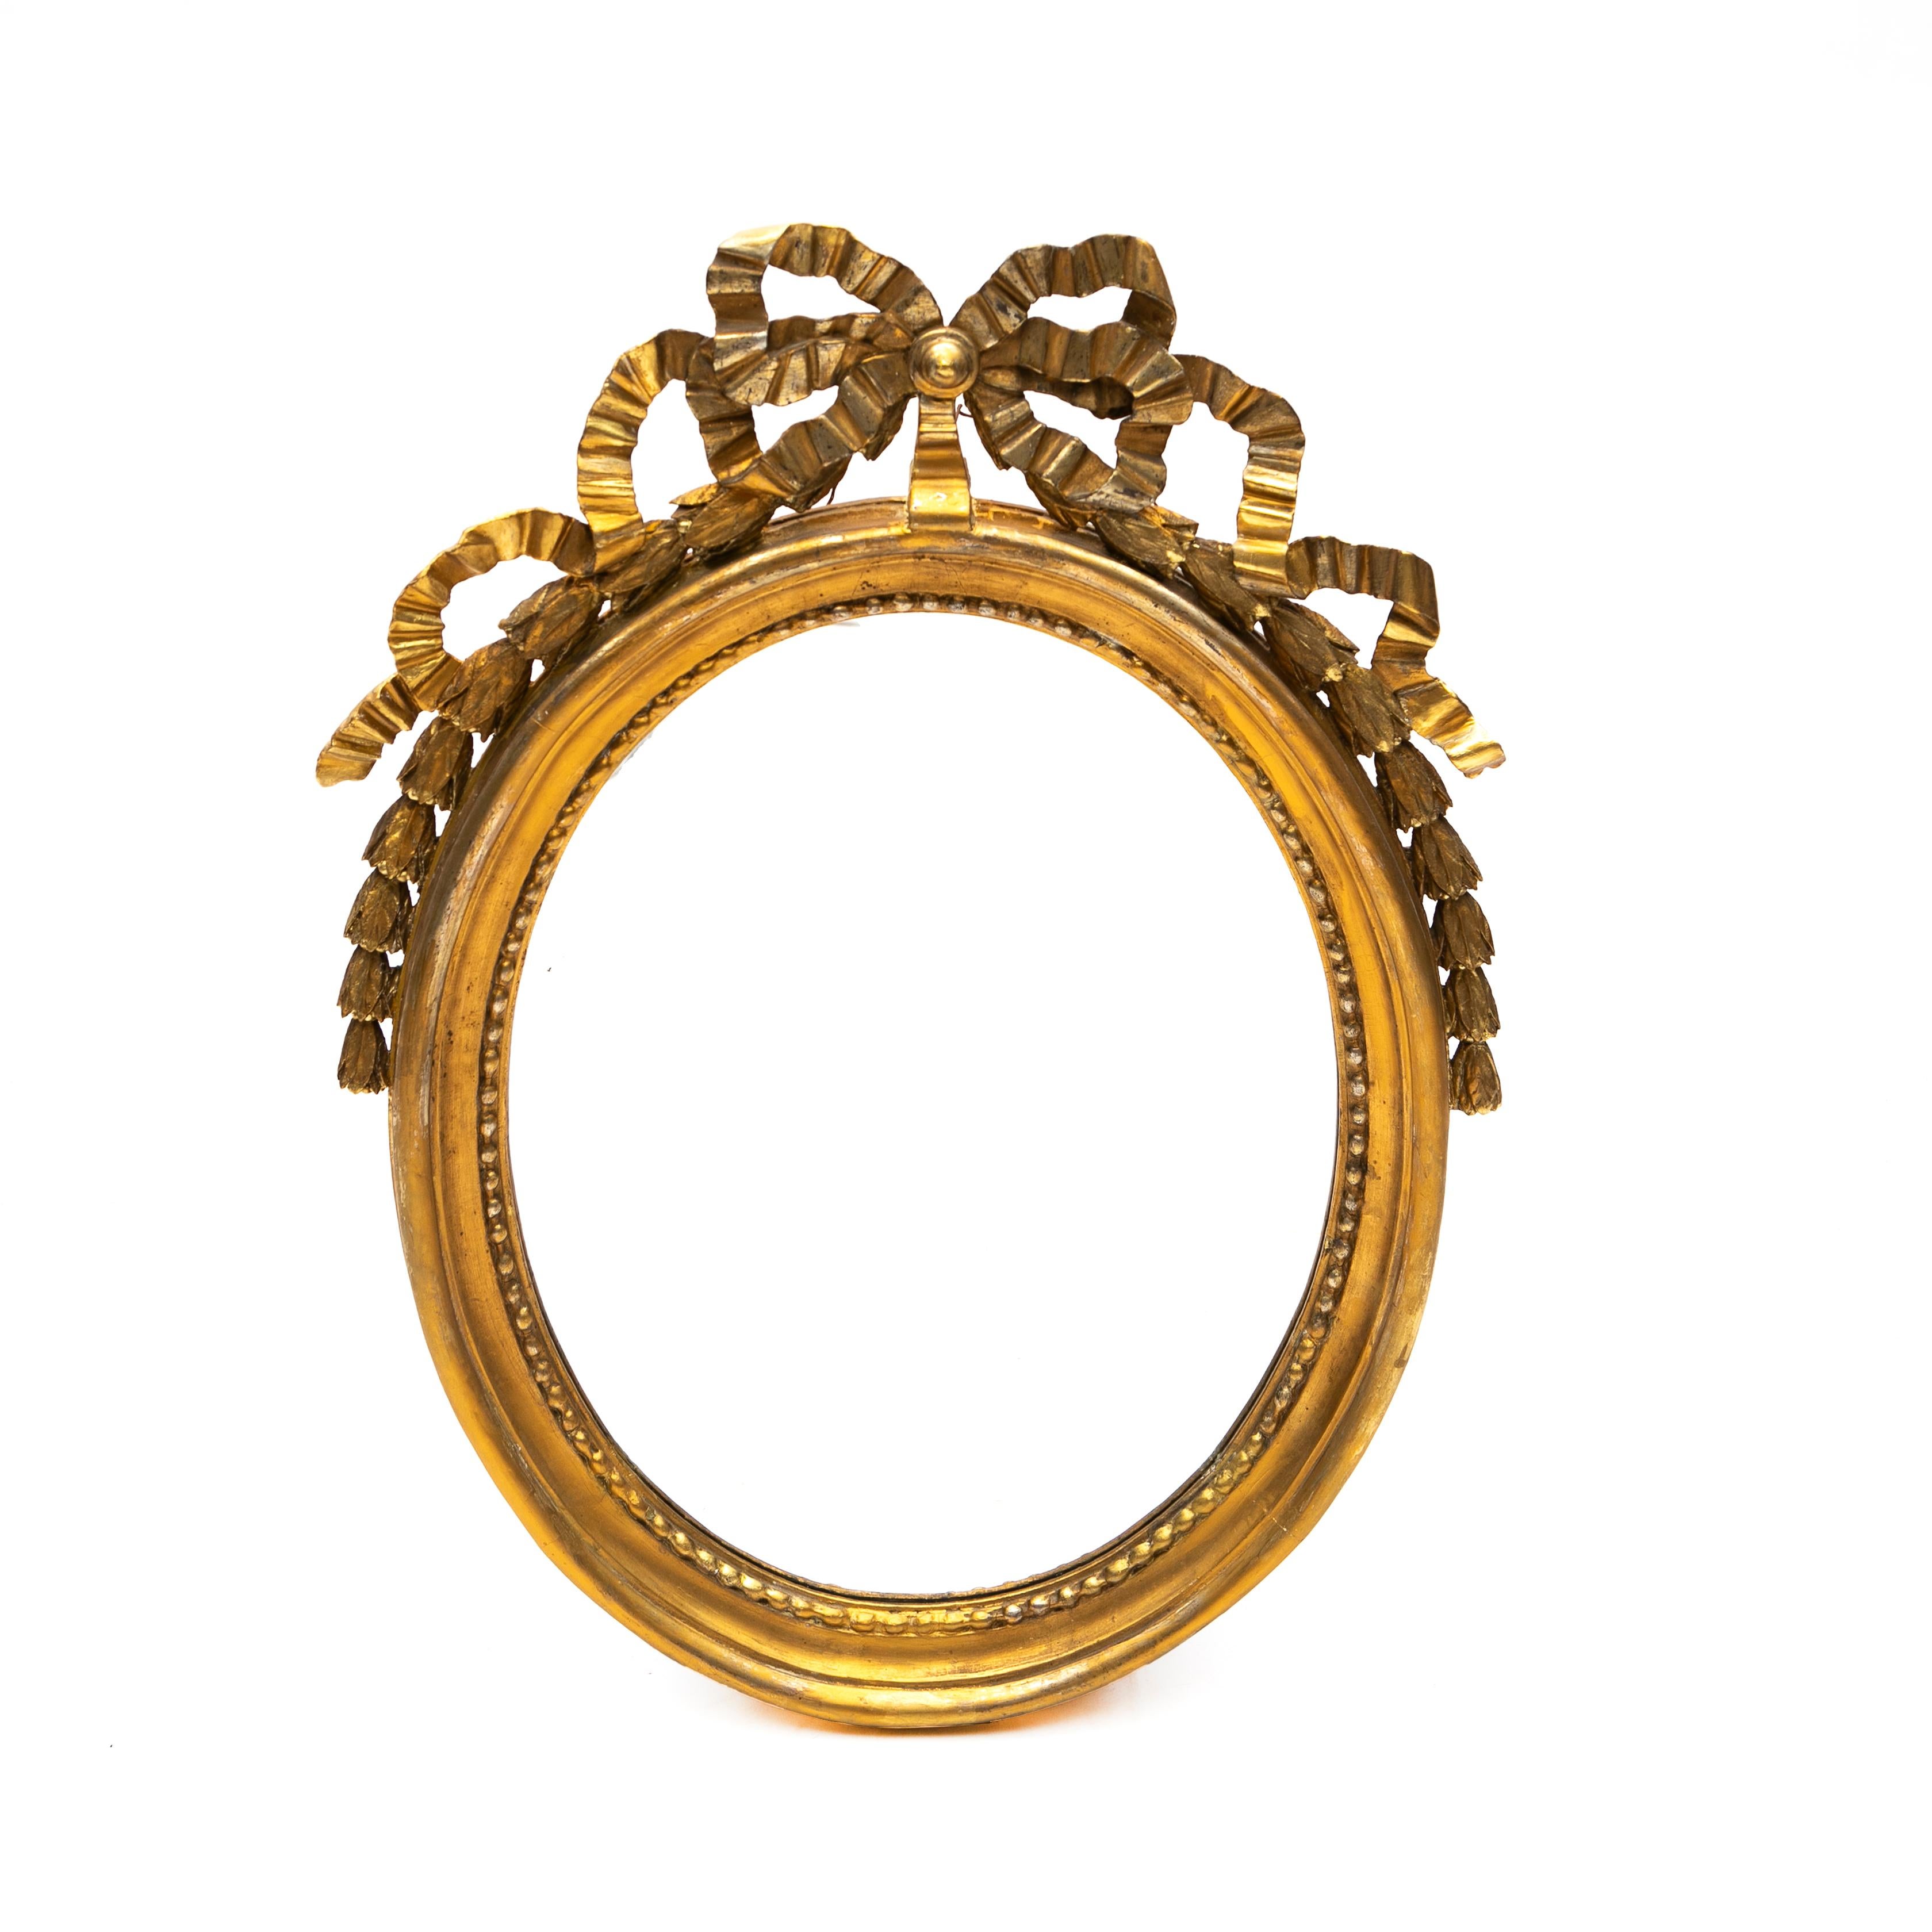 Klassischer Gustavianischer oder Louis Seize geschnitzter Wandspiegel aus Vergoldungsholz.
Der ovale Spiegel ist innen mit Perlen bestickt, der äußere Rahmen ist oben mit einer Schleife und an den Seiten mit Glockenblumen verziert.

Schweden